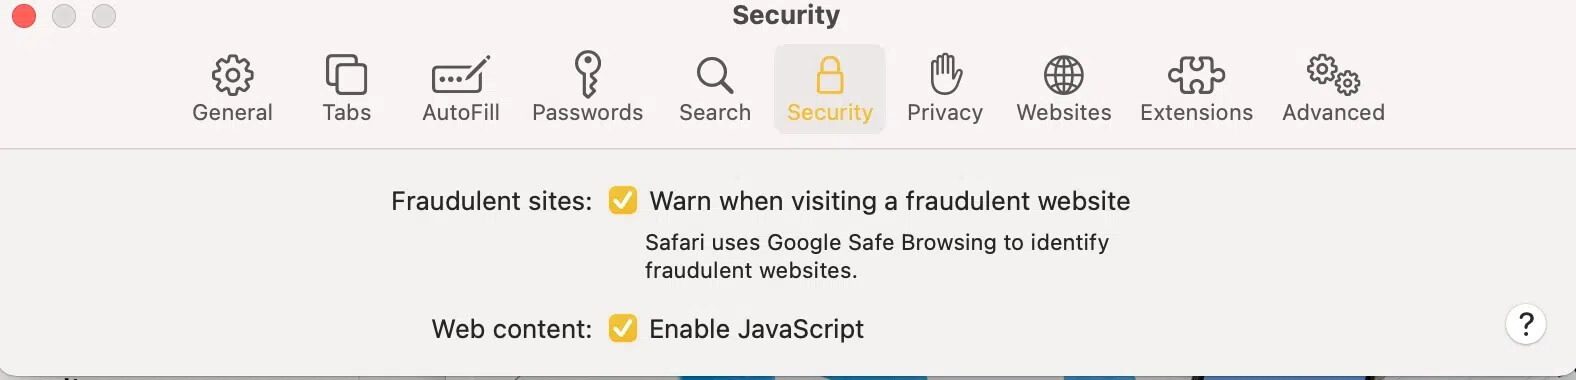 كيفية حظر النوافذ المنبثقة في Safari على Mac - %categories